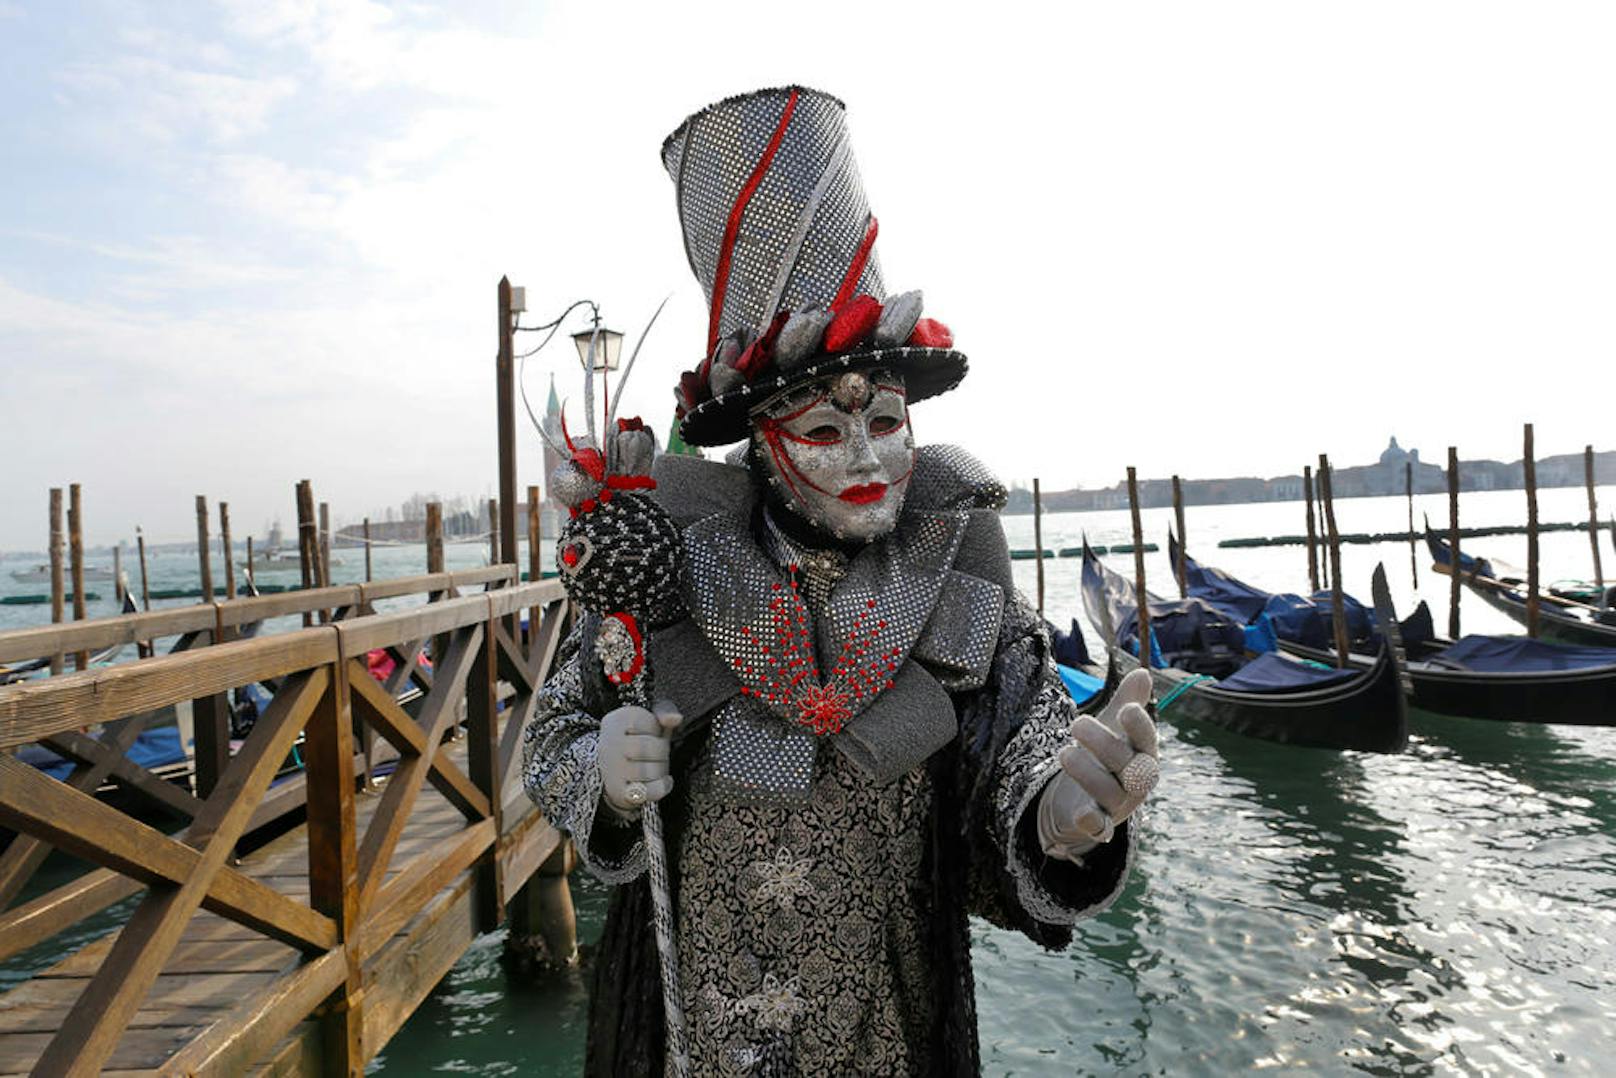 12.02.2017: Karneval in Venedig:
Der Karneval in Venedig wird noch bis Ende Februar mit einem großen Festival gefeiert.